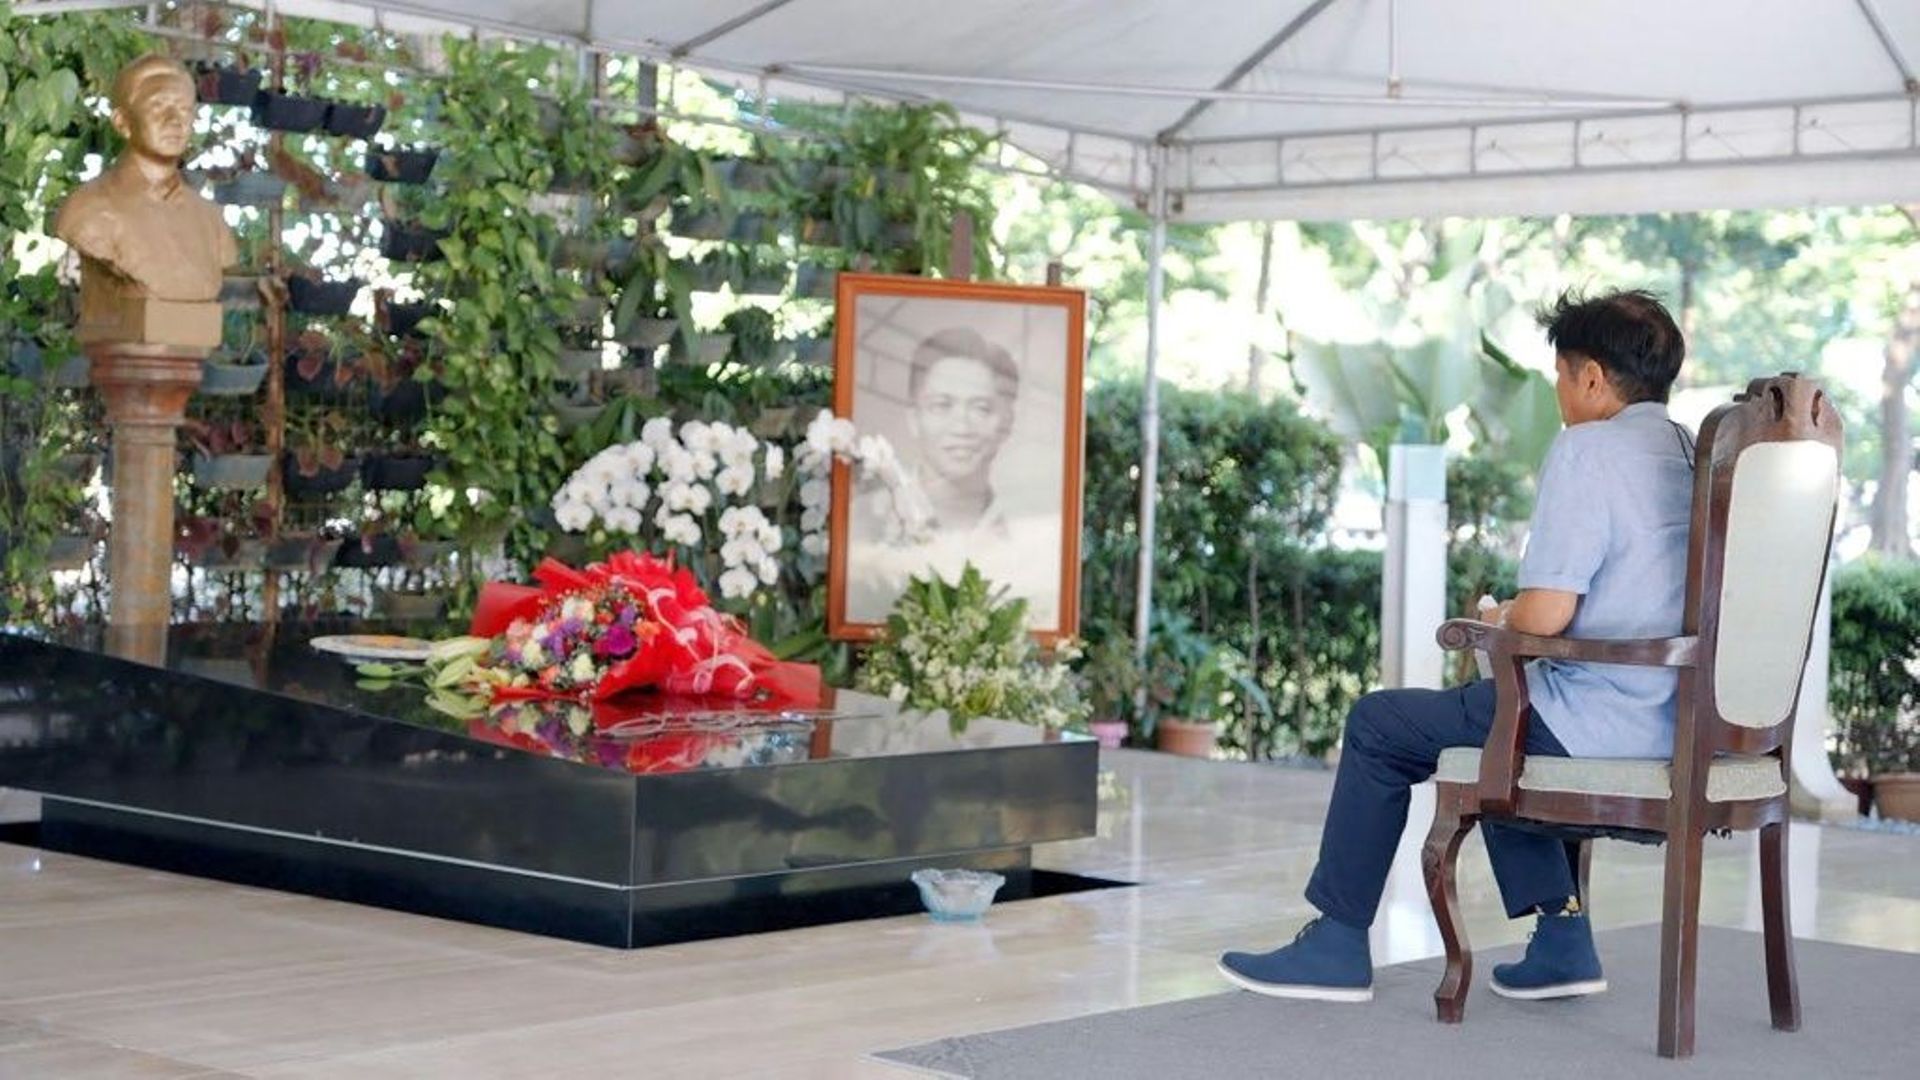 Photo prise le 10 mai 2022 et reçue le 11 mai du bureau de presse de Ferdinand "Bongbong" Marcos montrant le candidat à la présidentielle devant la tombe de son père, l'ex-président Ferdinand Marcos, au cimetière ds héros nationaux à Manille